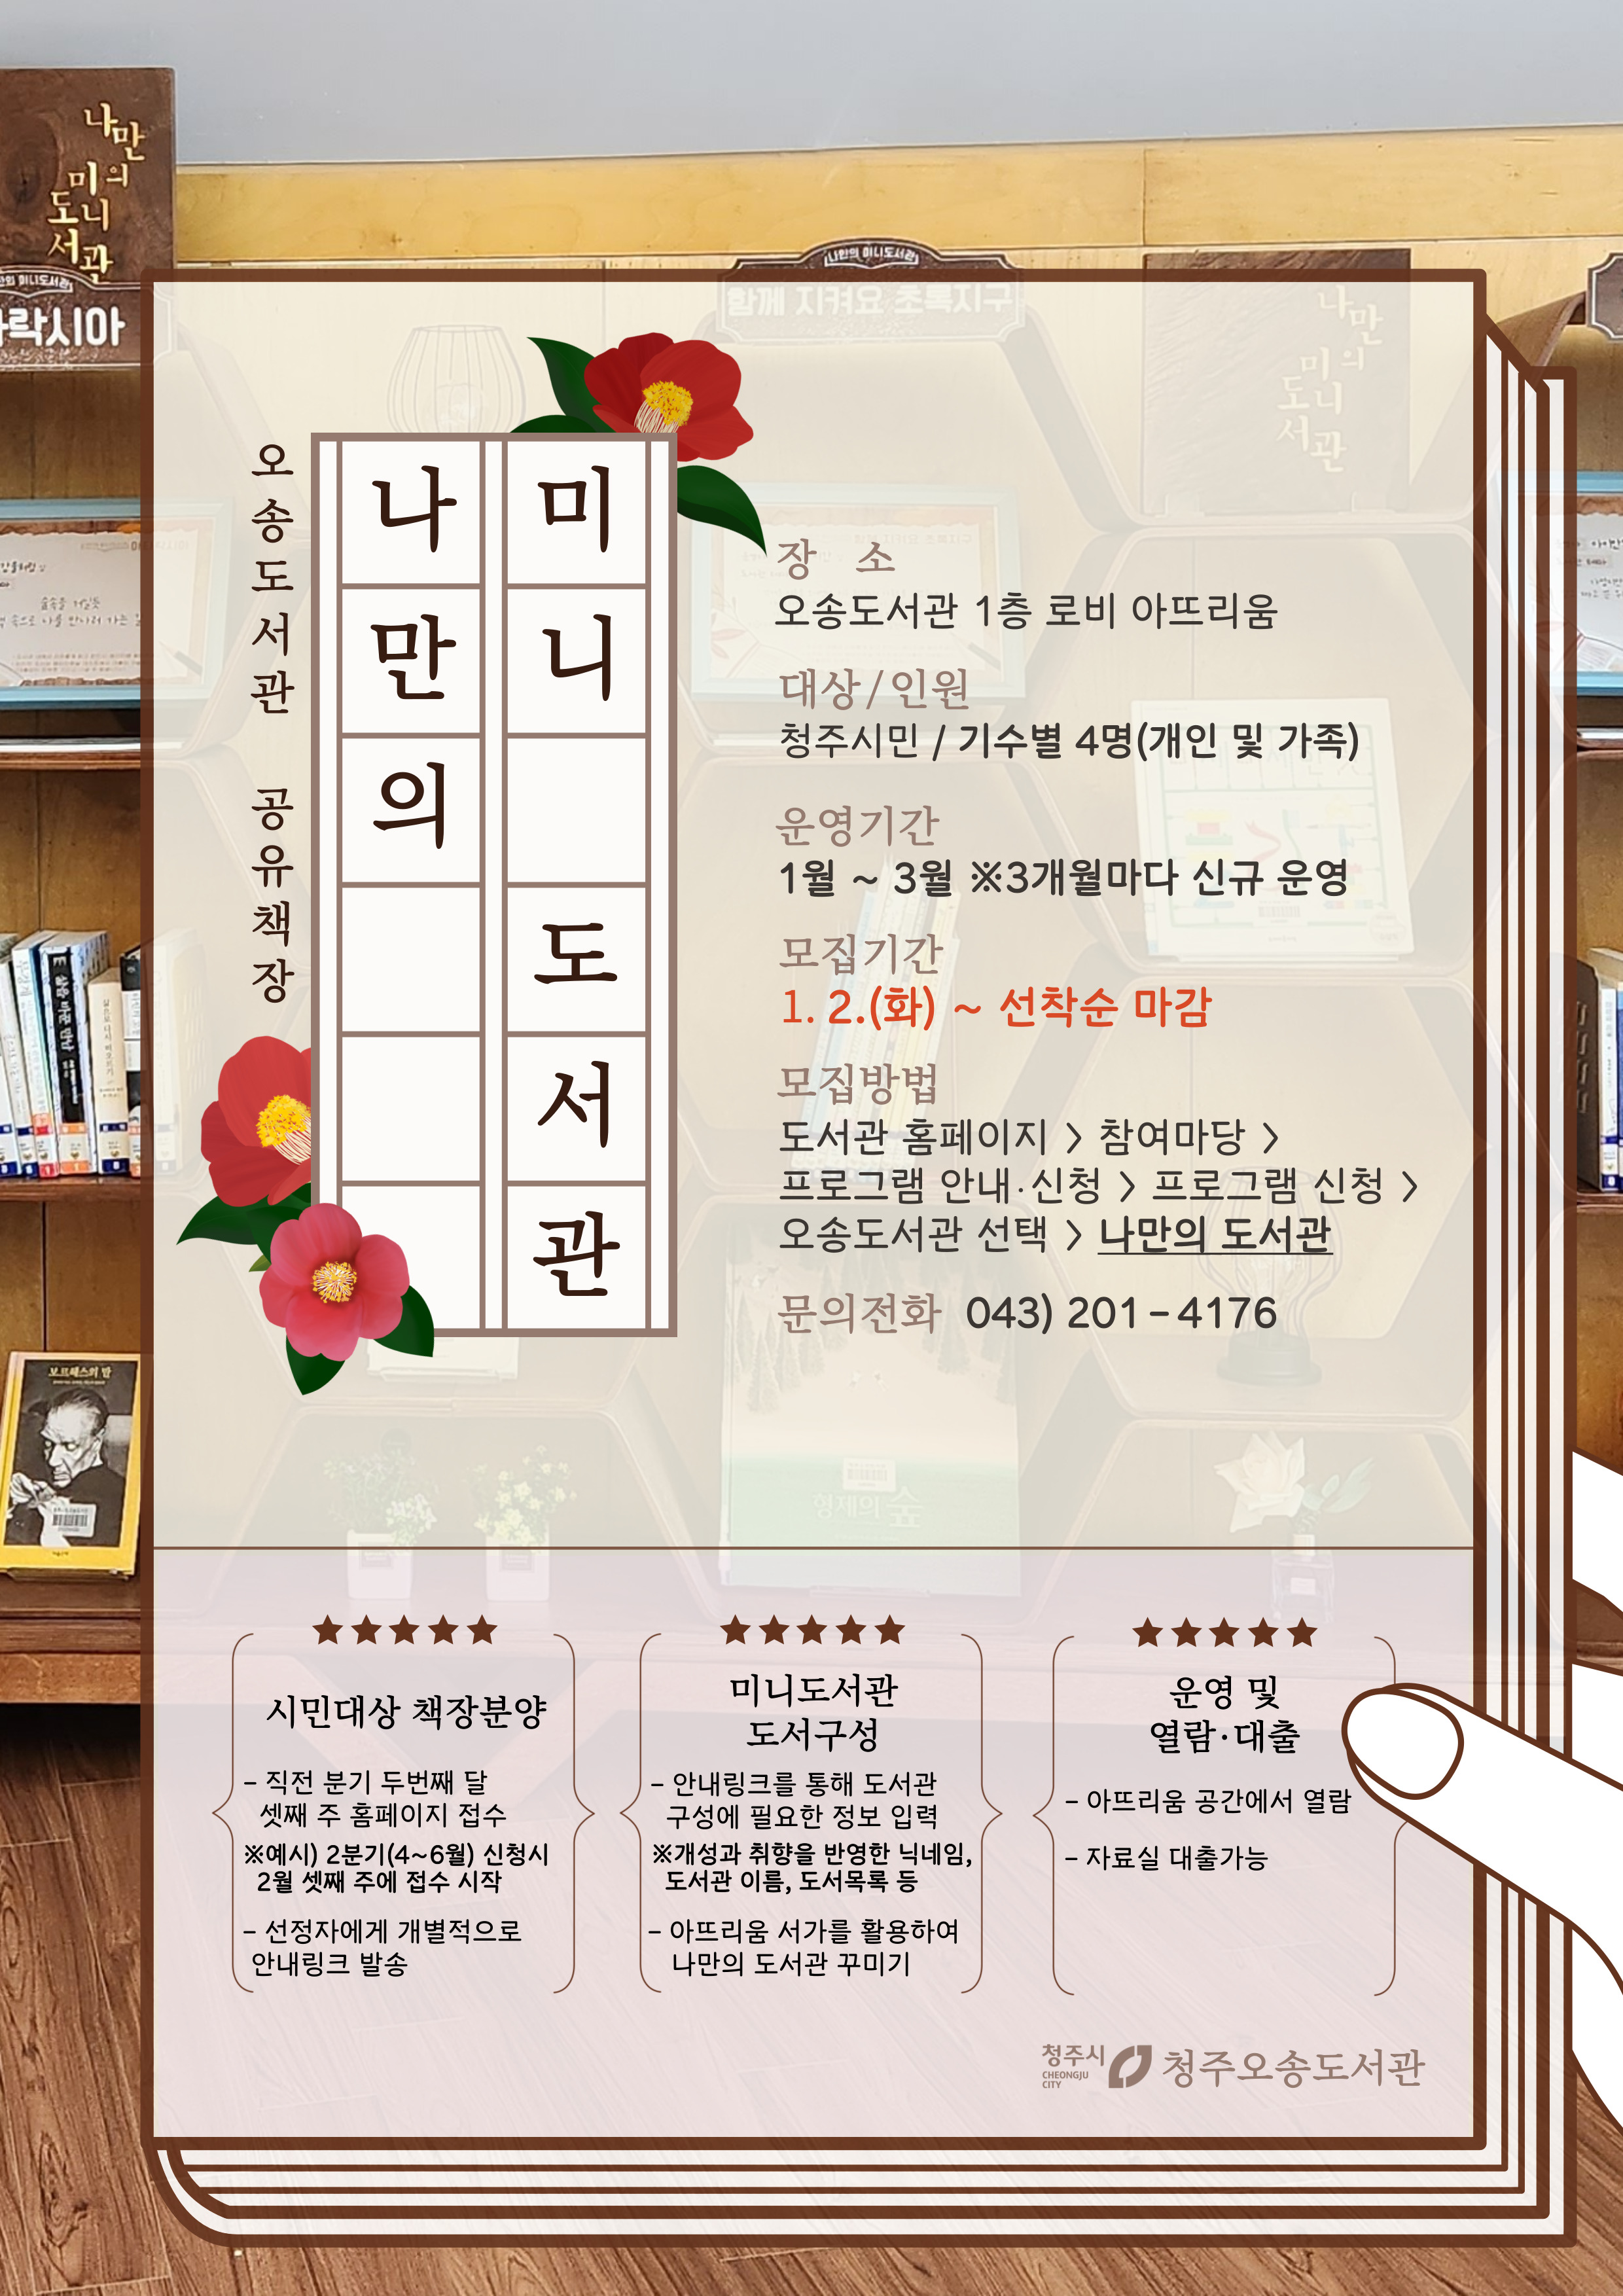 [오송도서관] 공유책장 <나만의 미니도서관> 1분기(1-3월) 접수안내